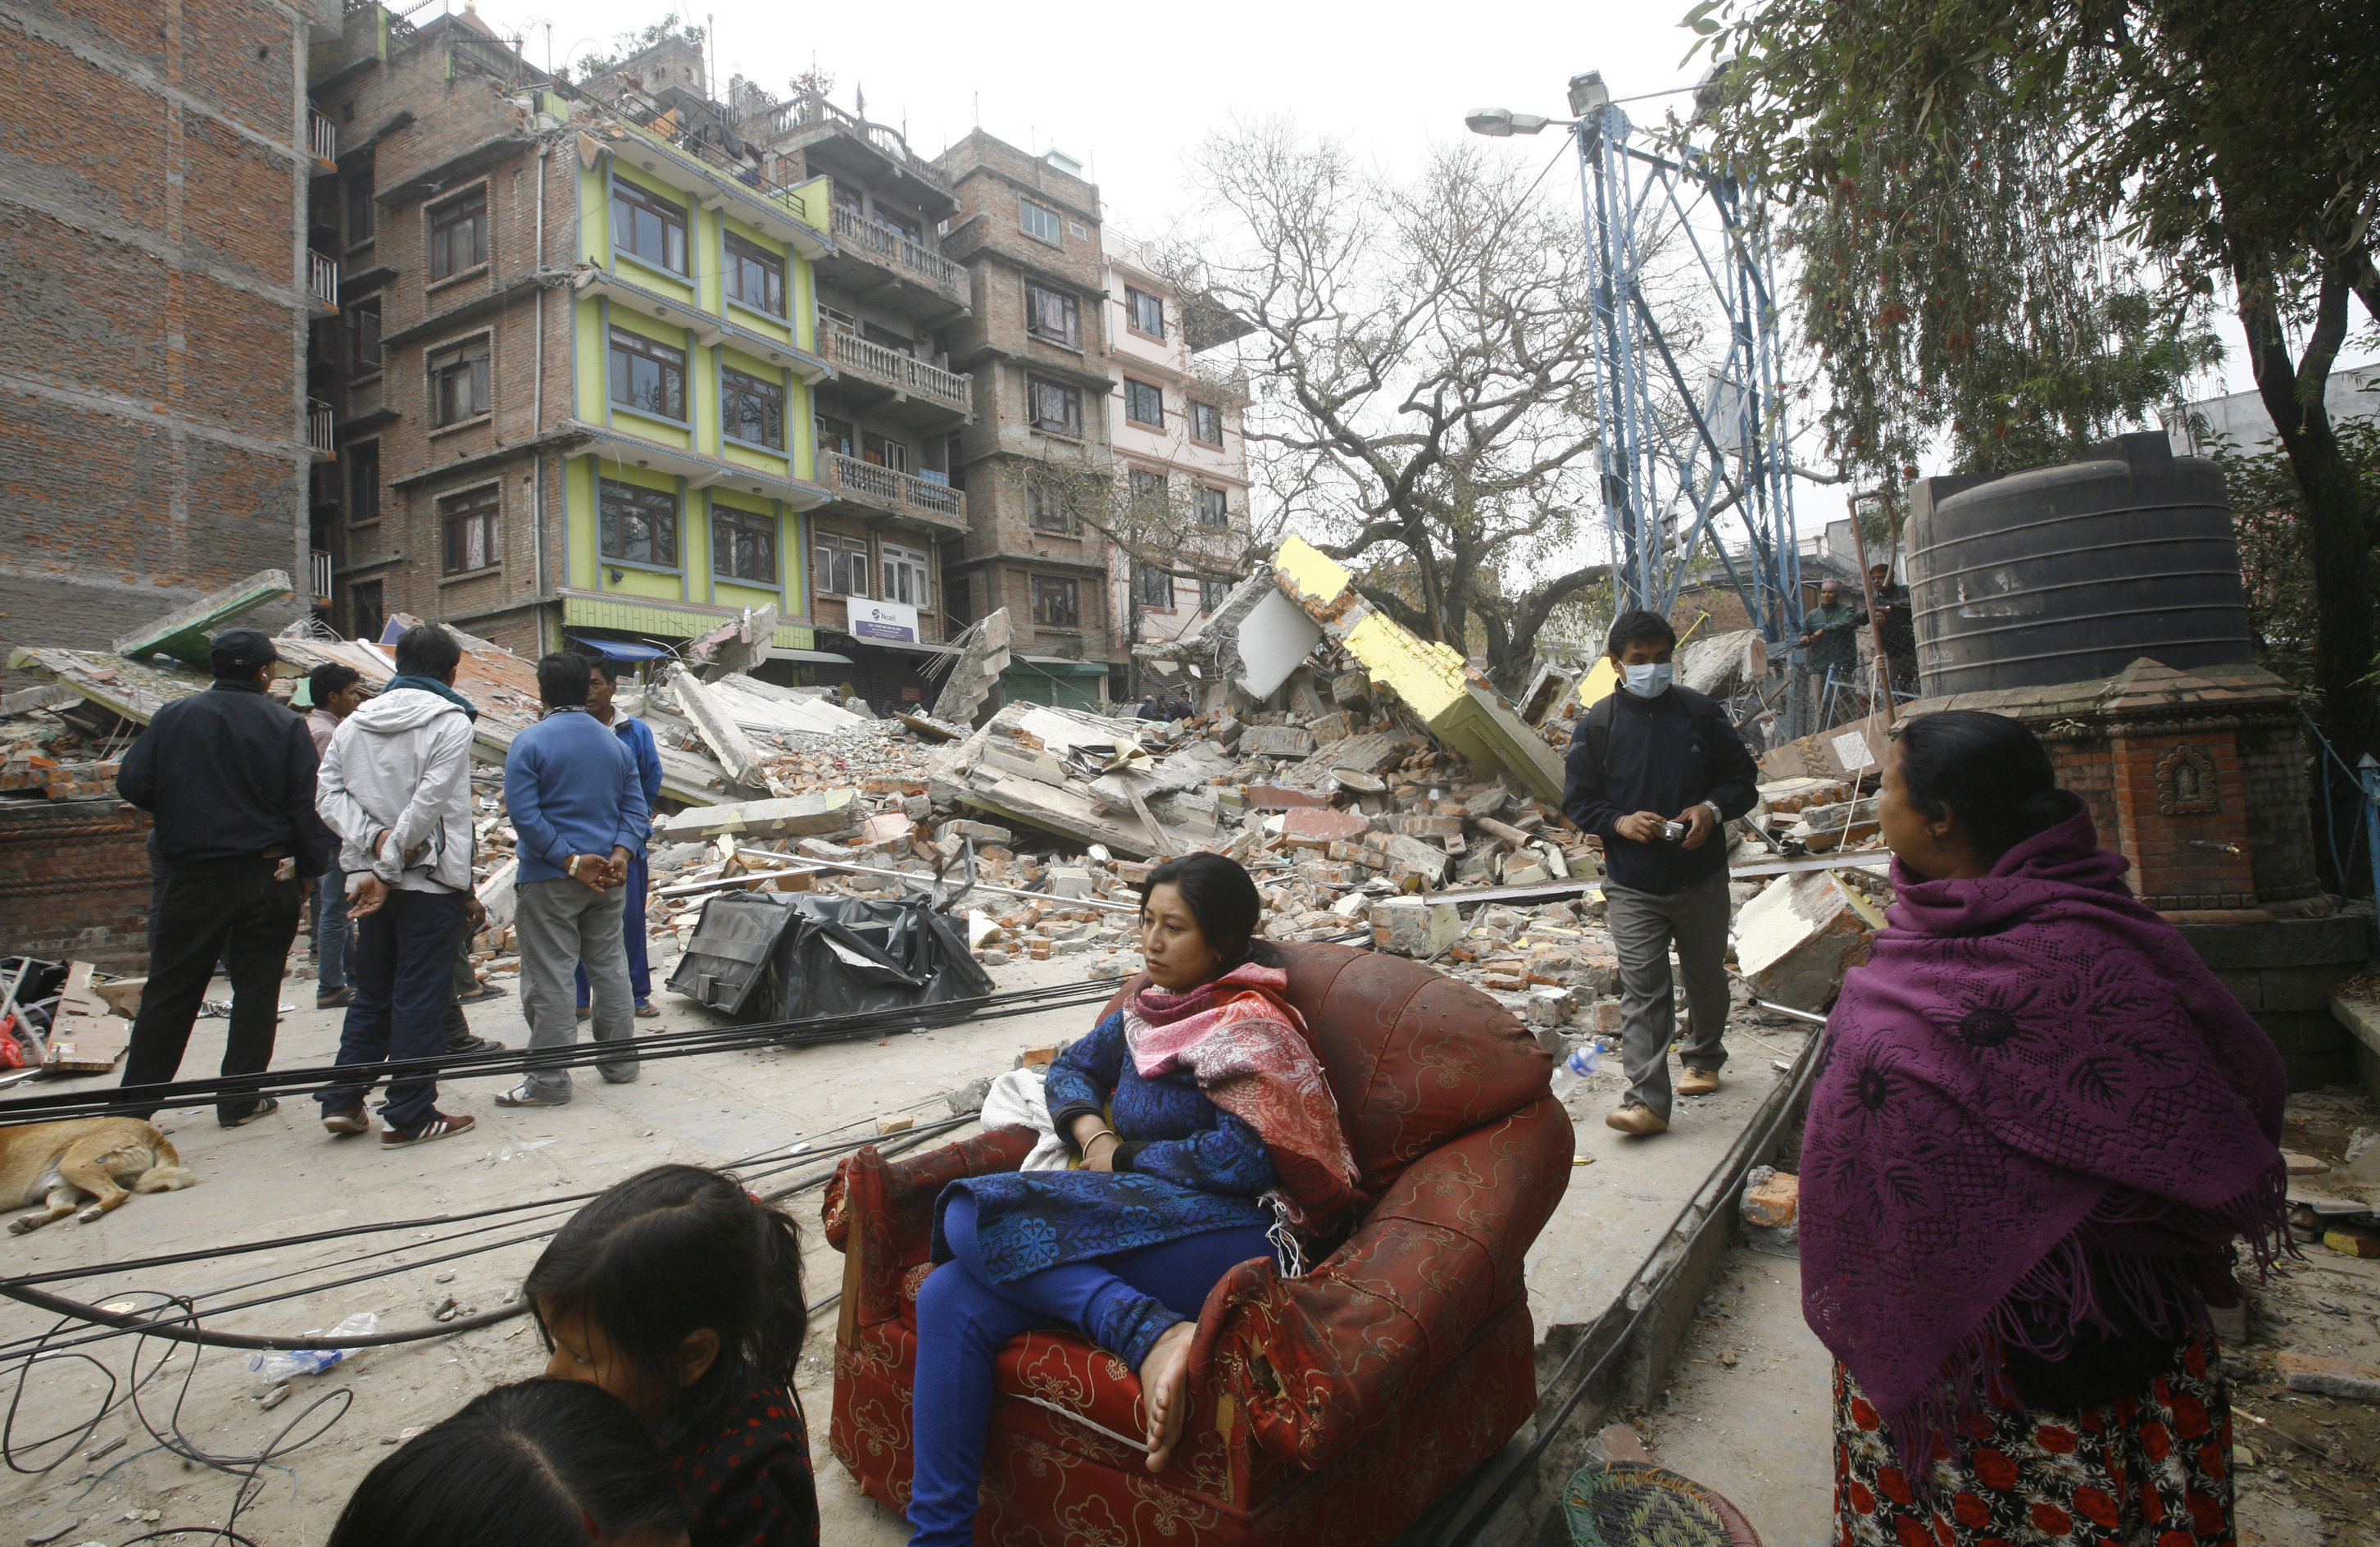 En nepalesisk kvinna sitter i en fåtölj mitt bland förstörelsen.